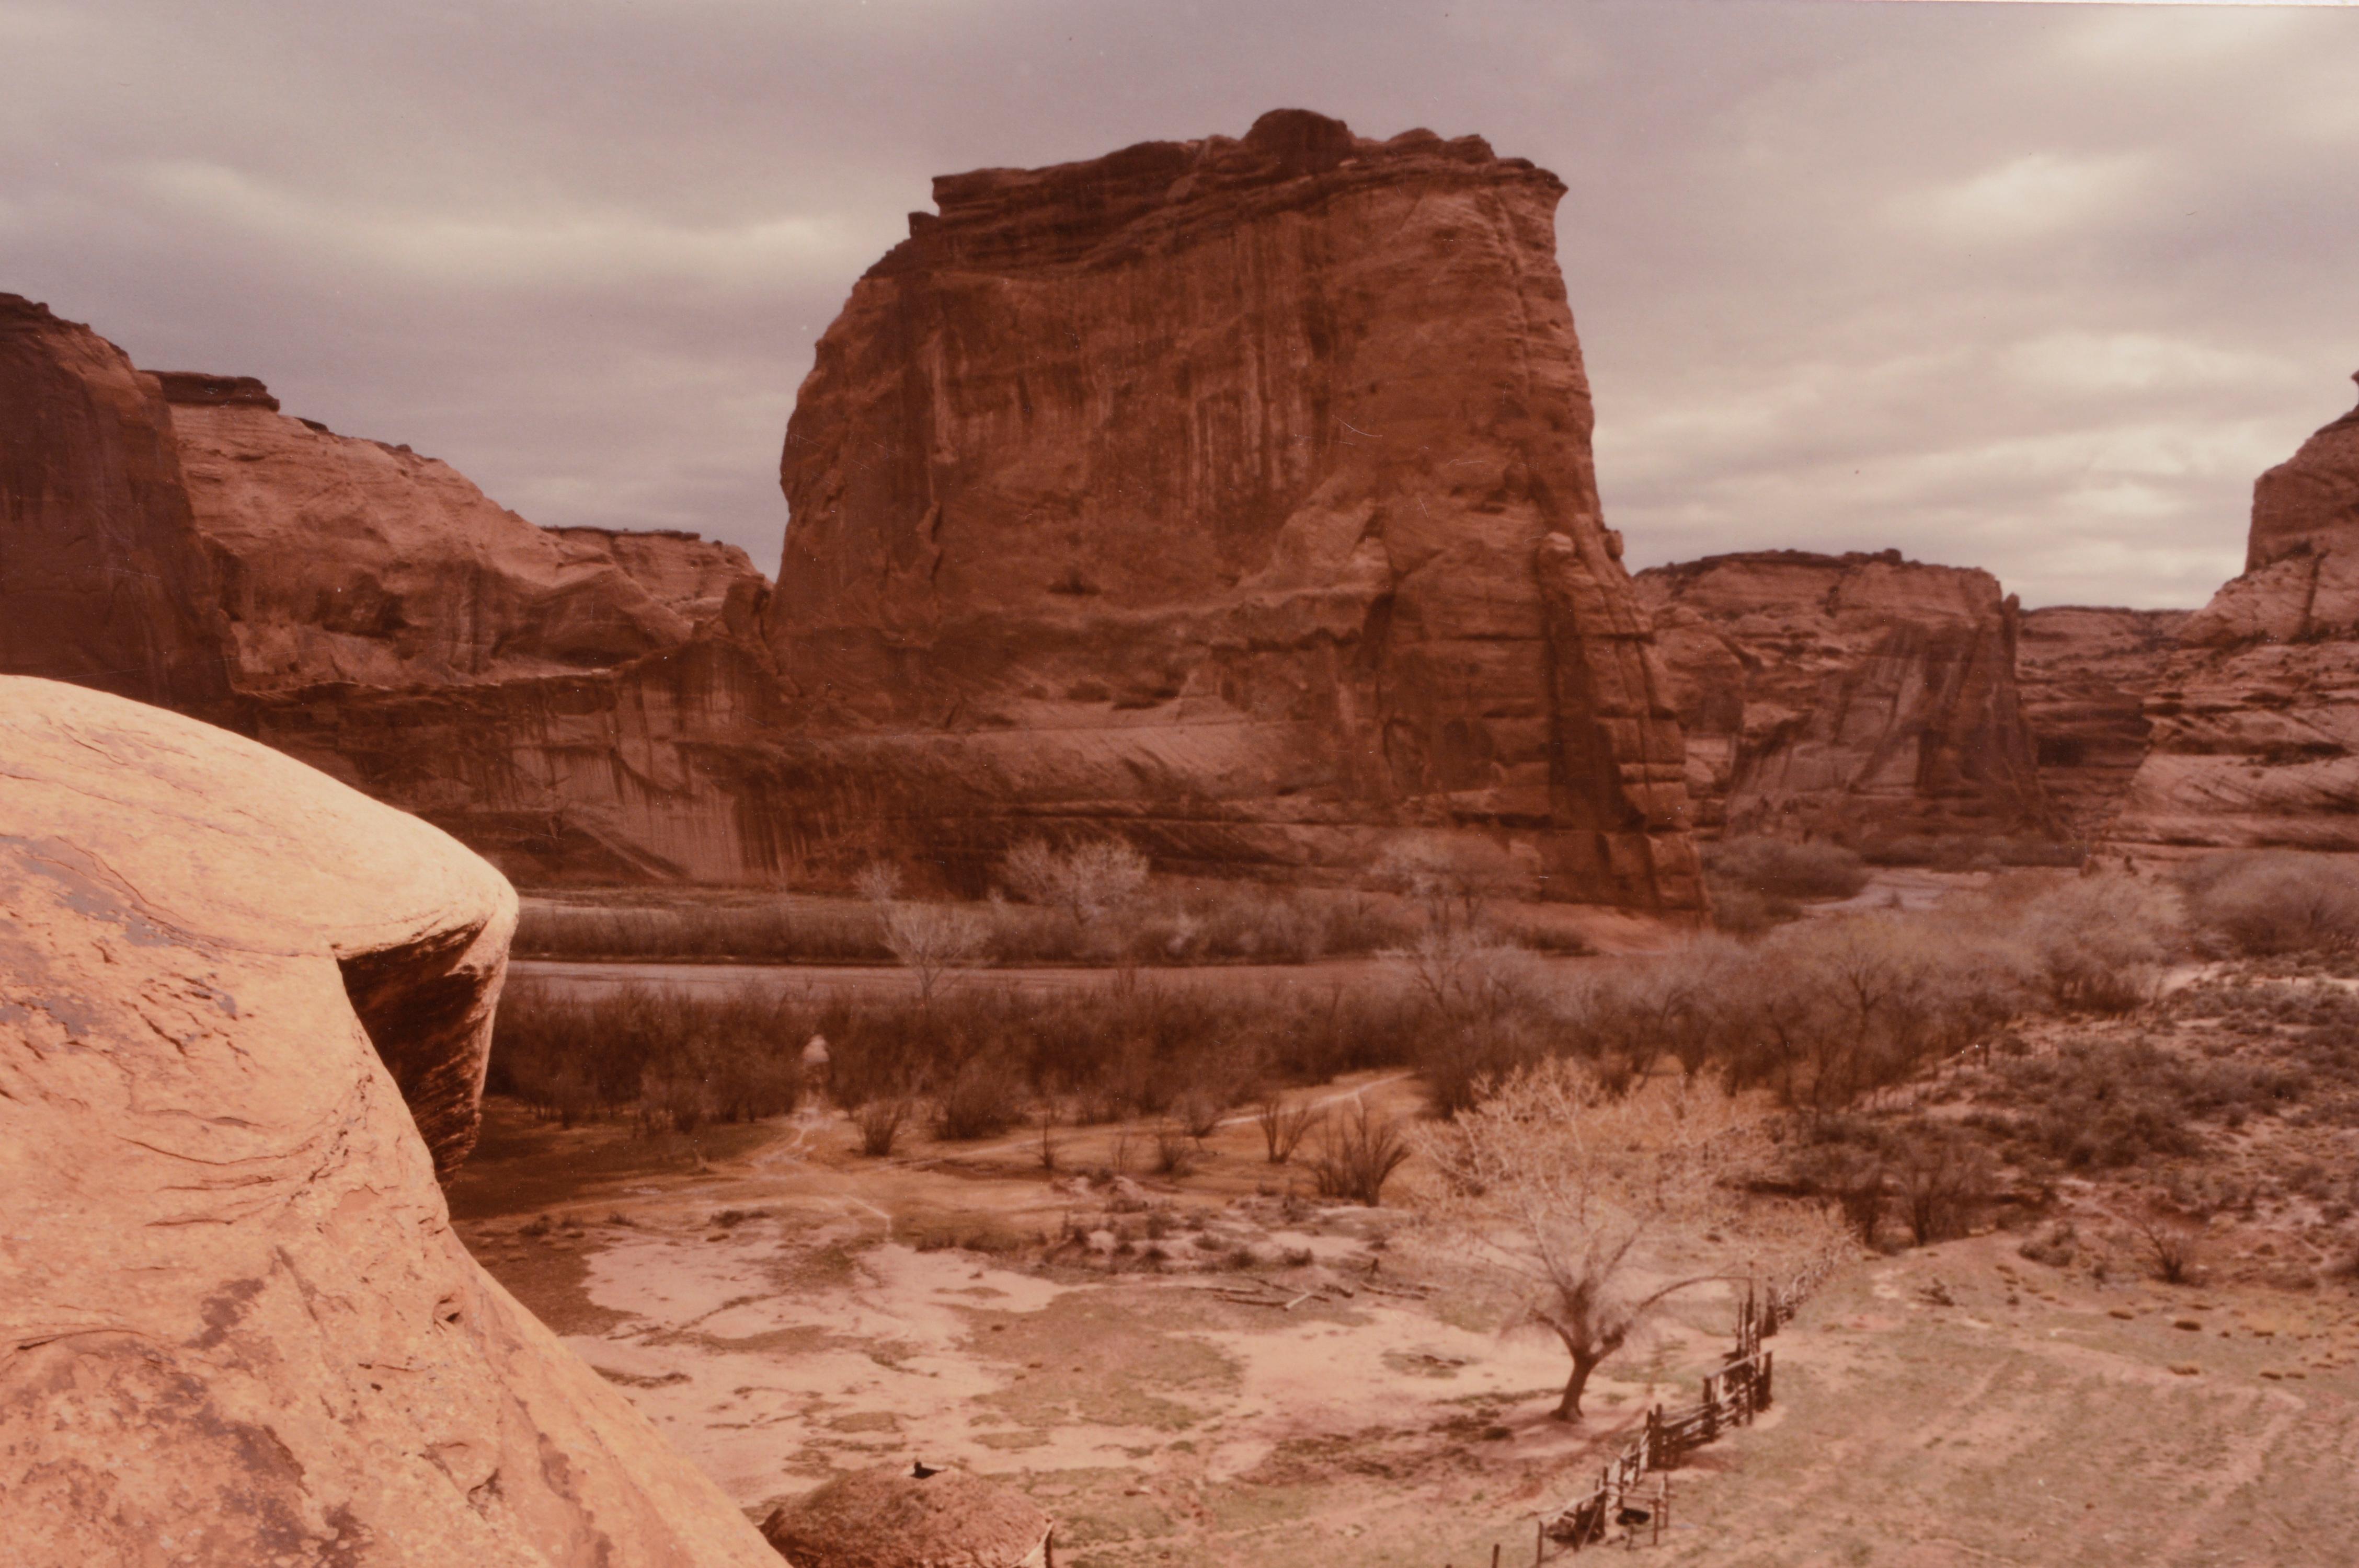 Photographie emblématique du paysage désertique du Canyon de Chelly National Monument par un artiste inconnu (américain, 20e siècle), 1984. Signé 